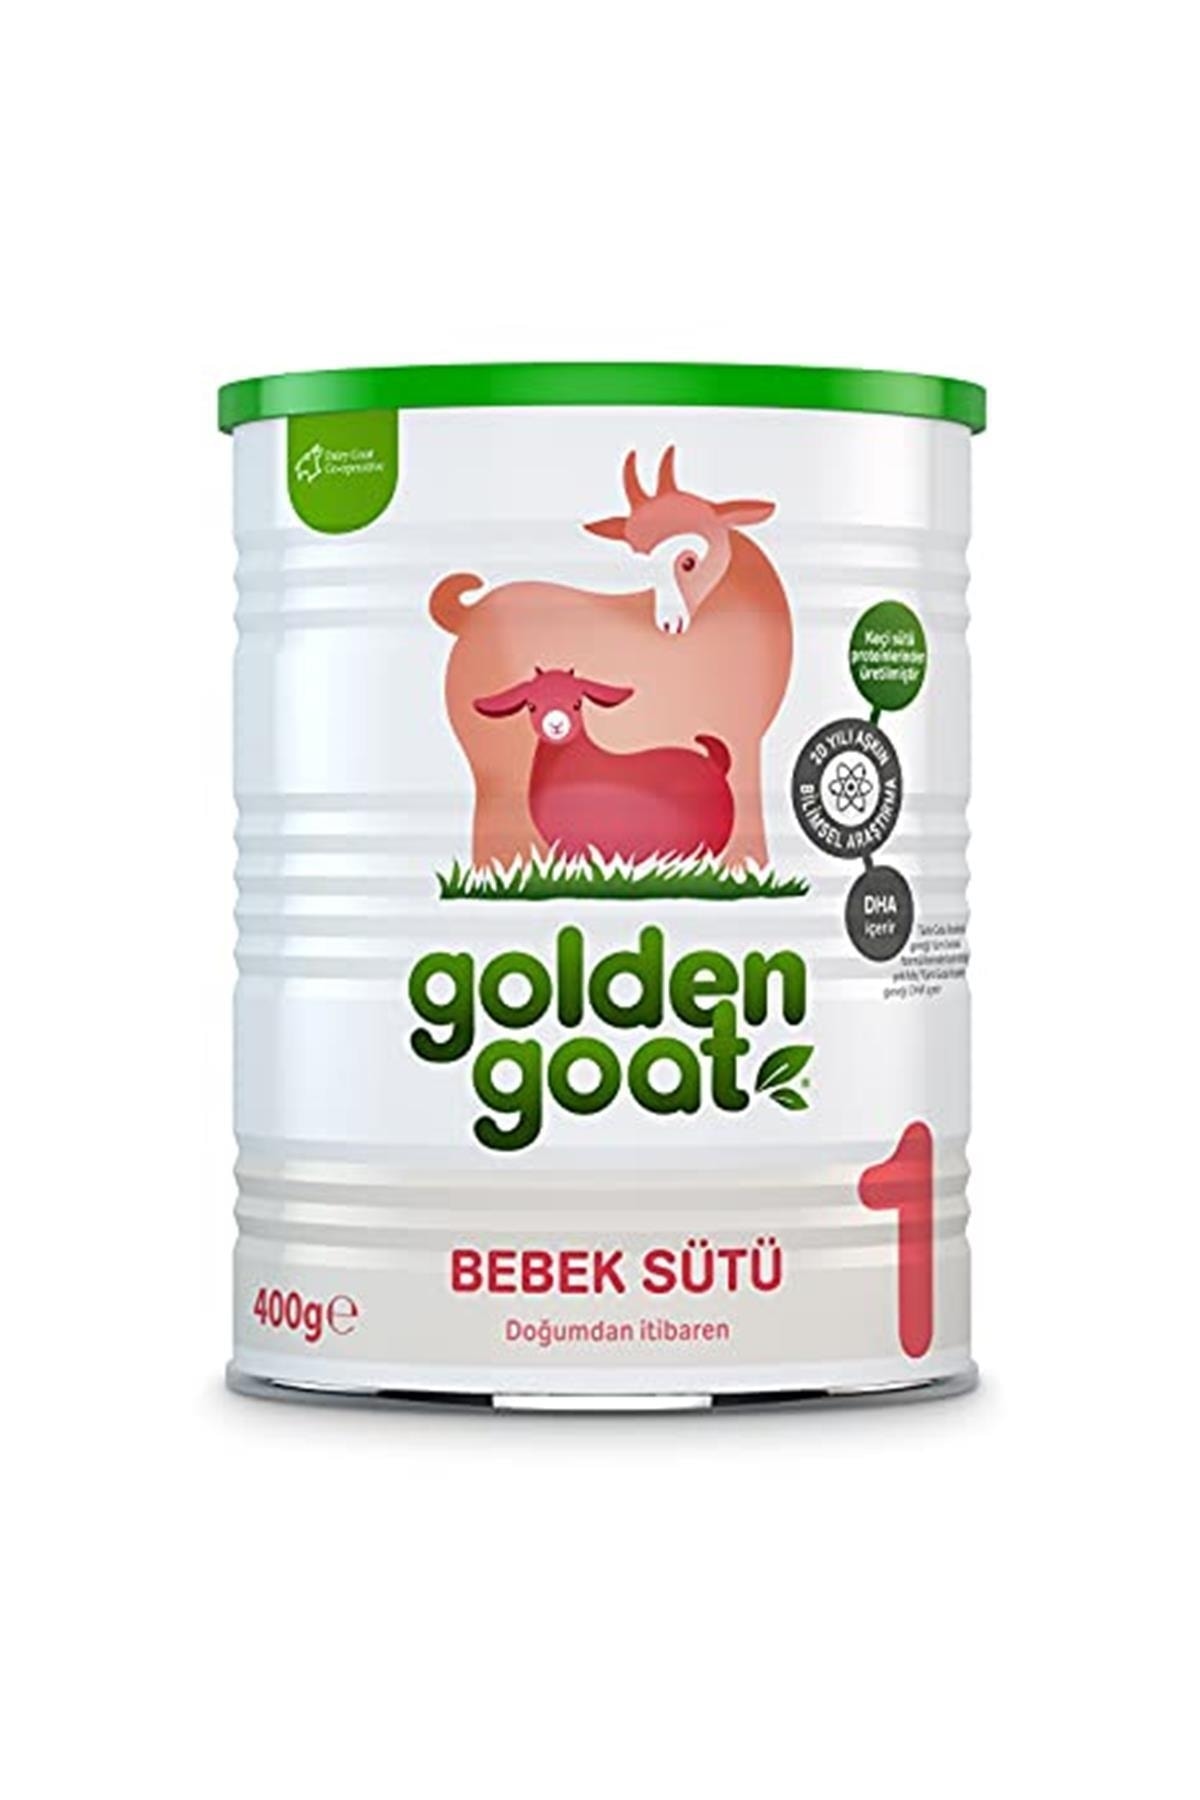 Golden Goat 1 Bebek Sütü 400 Gr, Doğumdan Itibaren, 1 Paket(1 X 400 G)